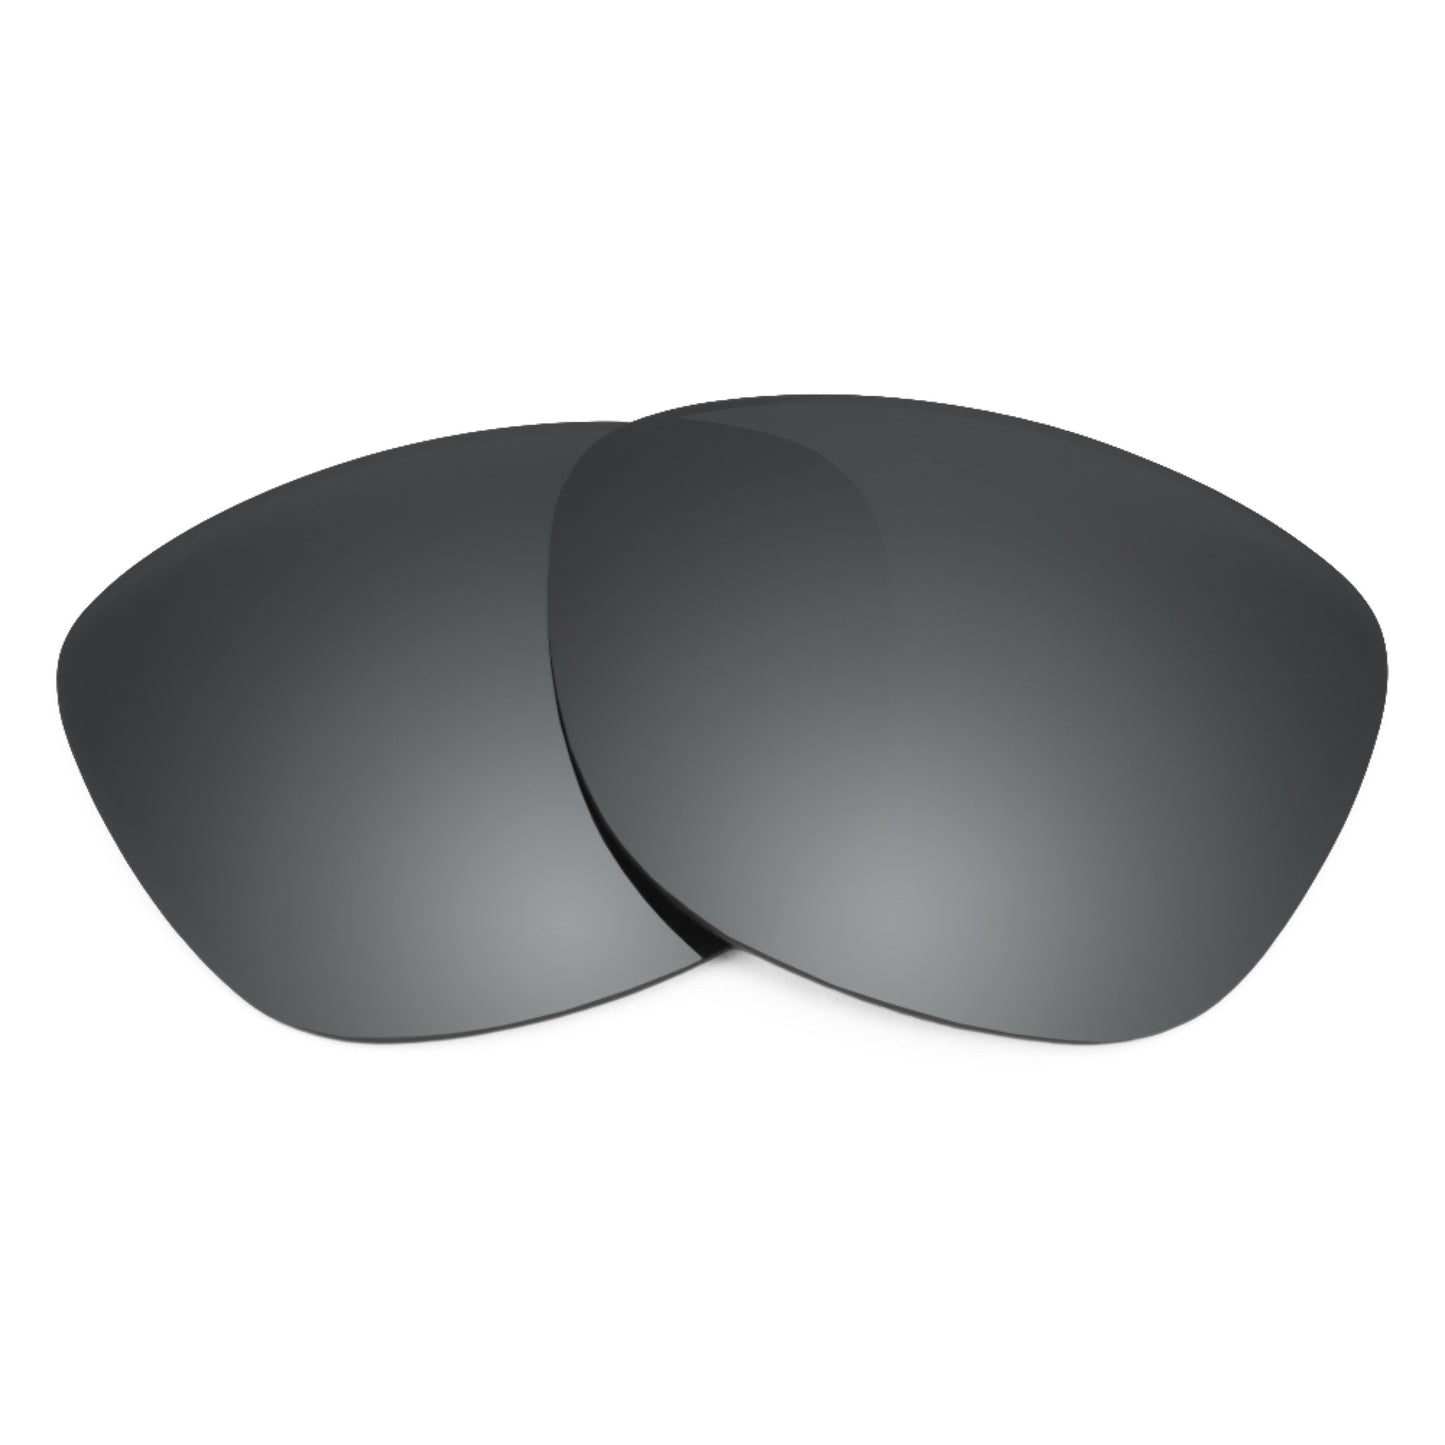 Revant replacement lenses for Ray-Ban Hexagonal RB3548N 48mm Elite Polarized Black Chrome